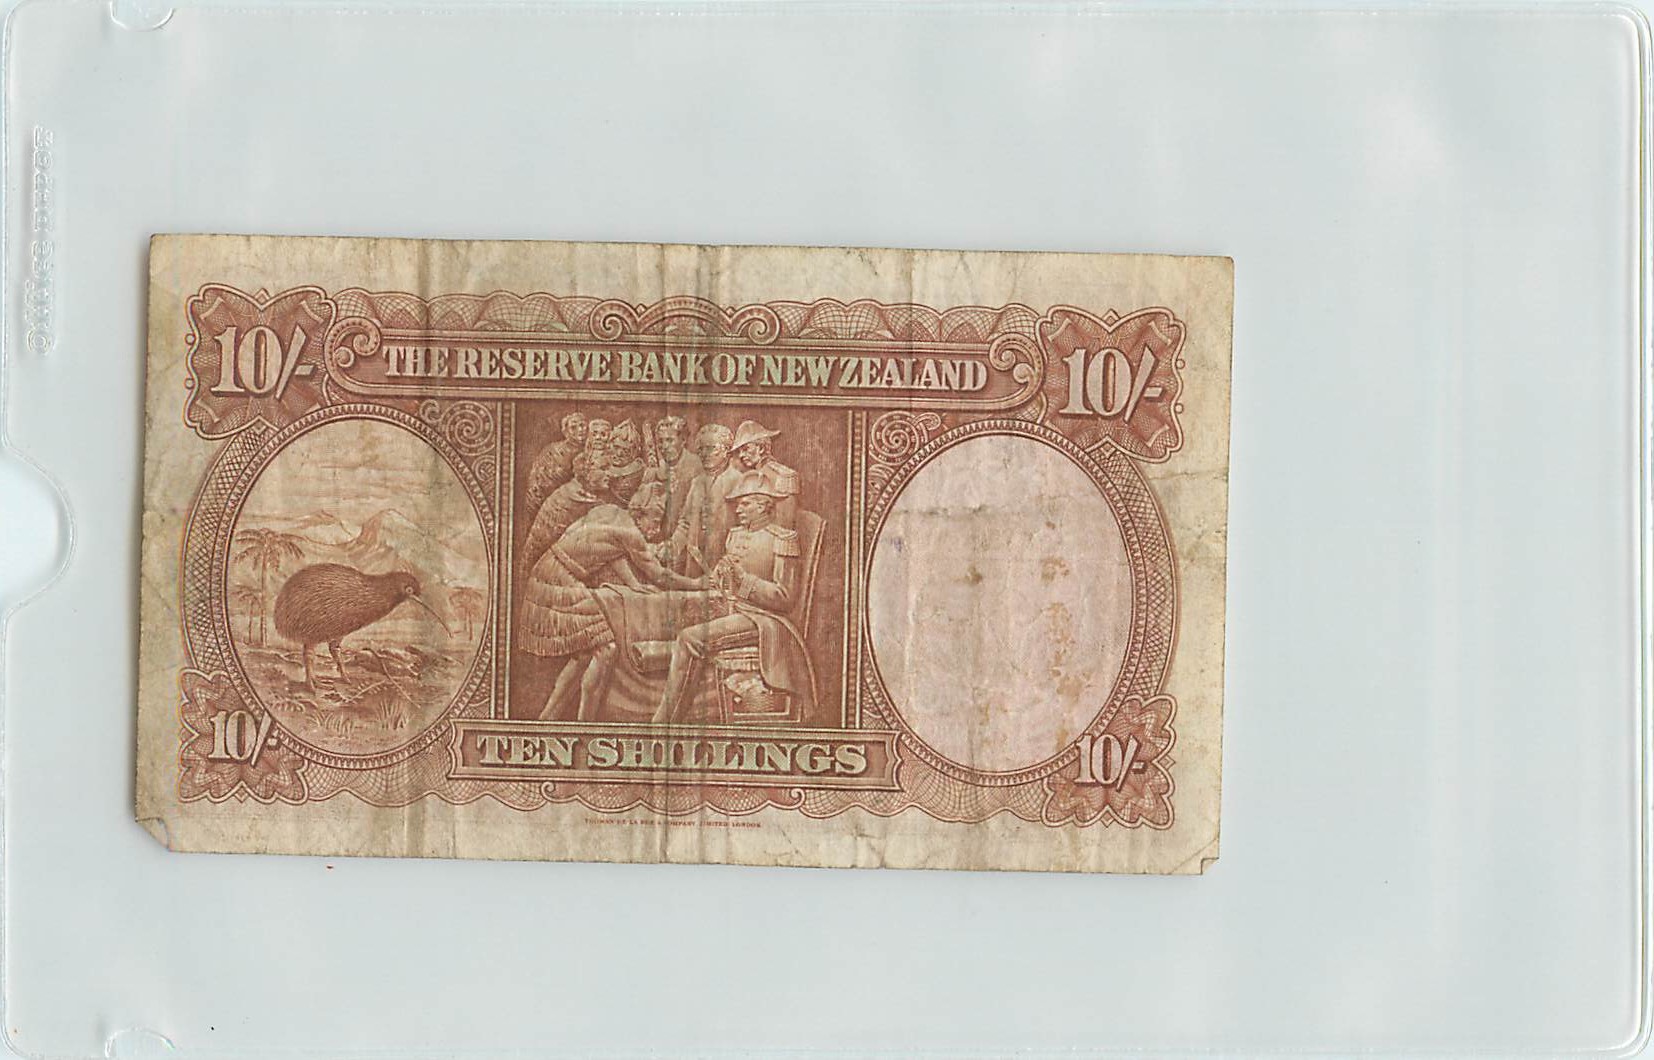 New Zealand 10 shiilings back 2015_08_30_16_45_050001.jpg